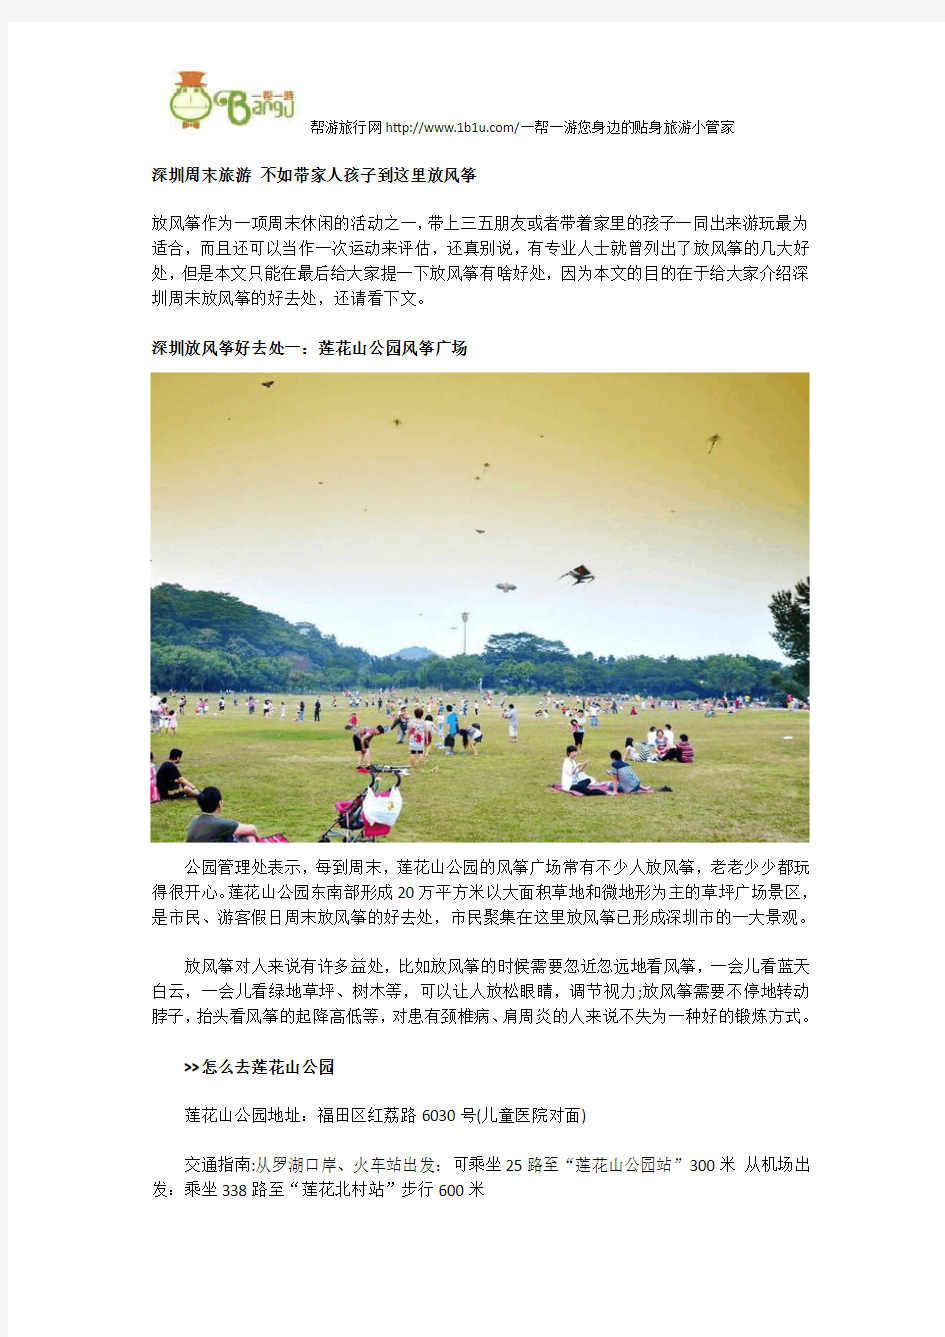 深圳周末旅游 不如带家人孩子到这里放风筝